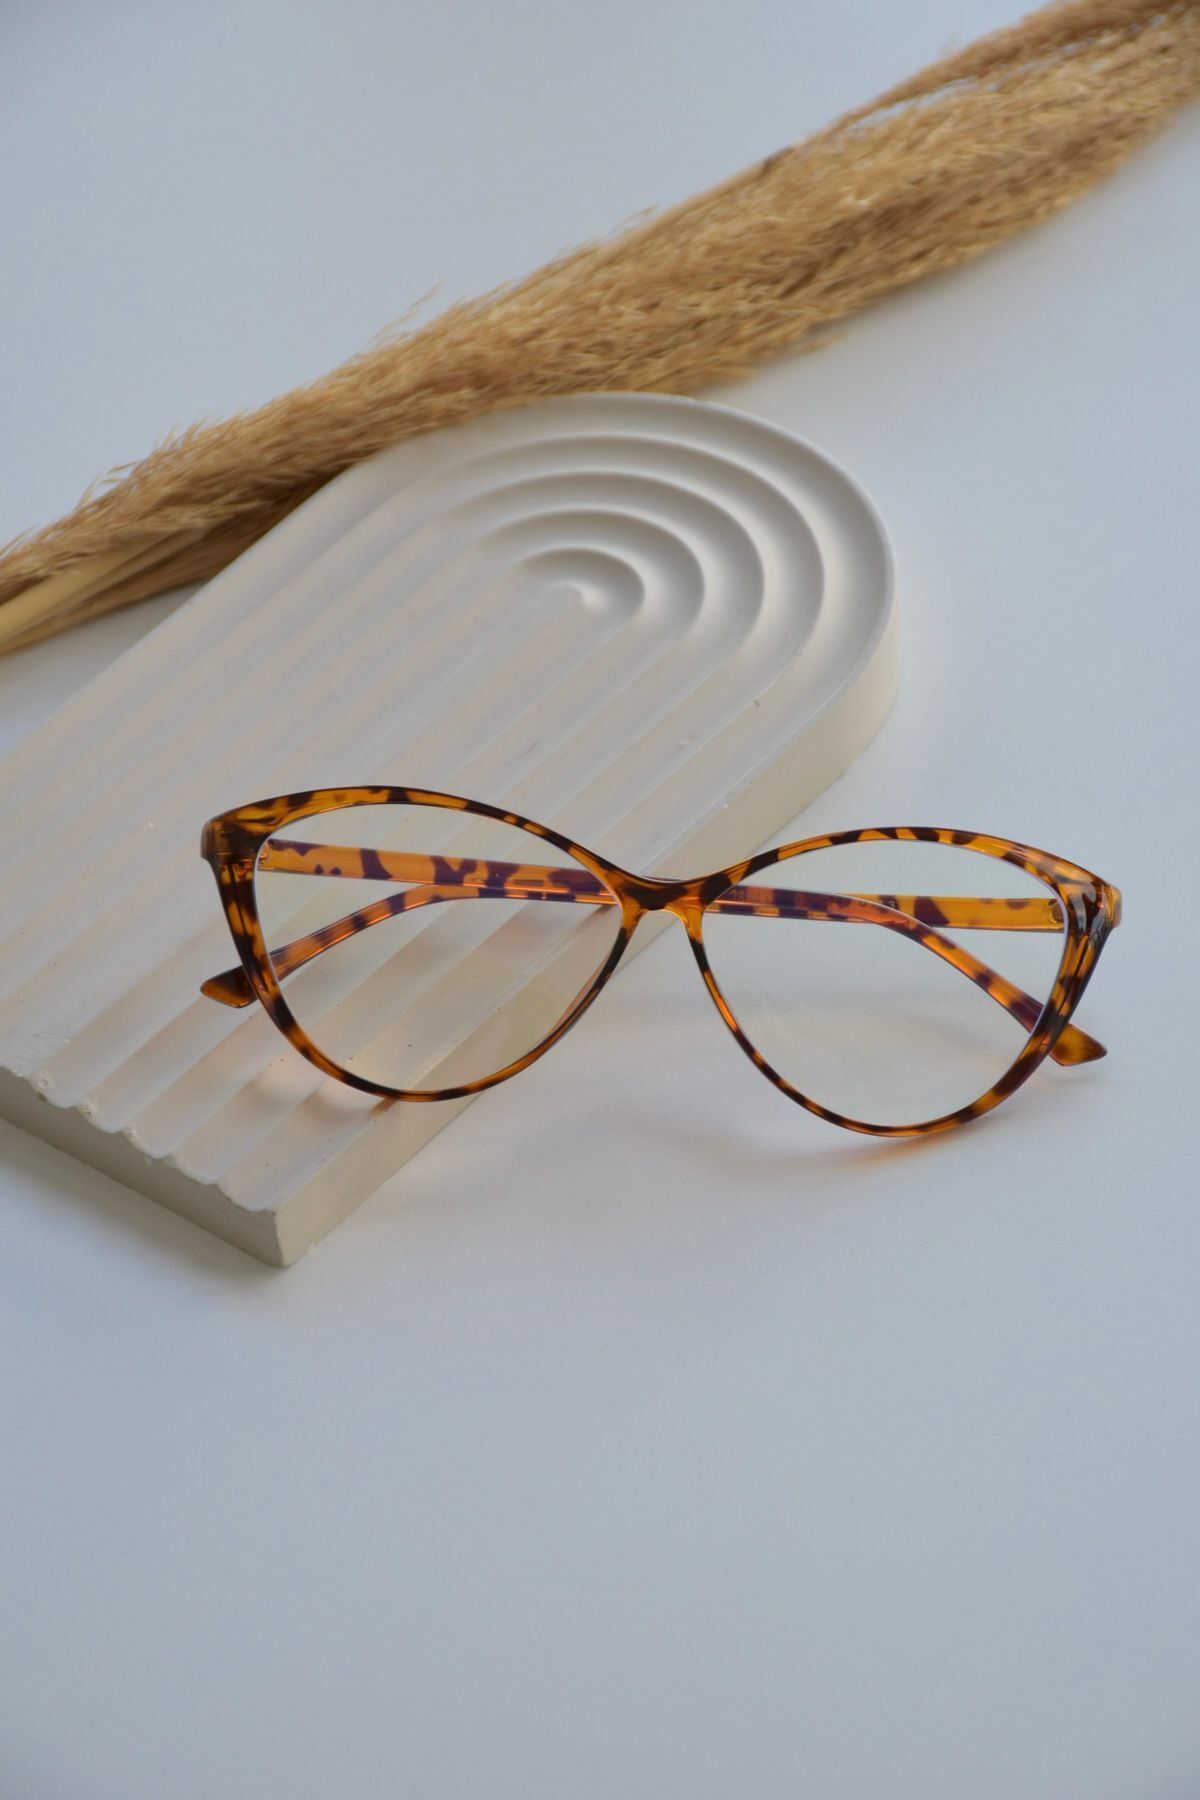 LOOKUP Mavi Işık Korumalı Cat Eye Gözlük Optik Uyumlu (Camları Değişebilir)  Anti Blue Light Glasses Yeni